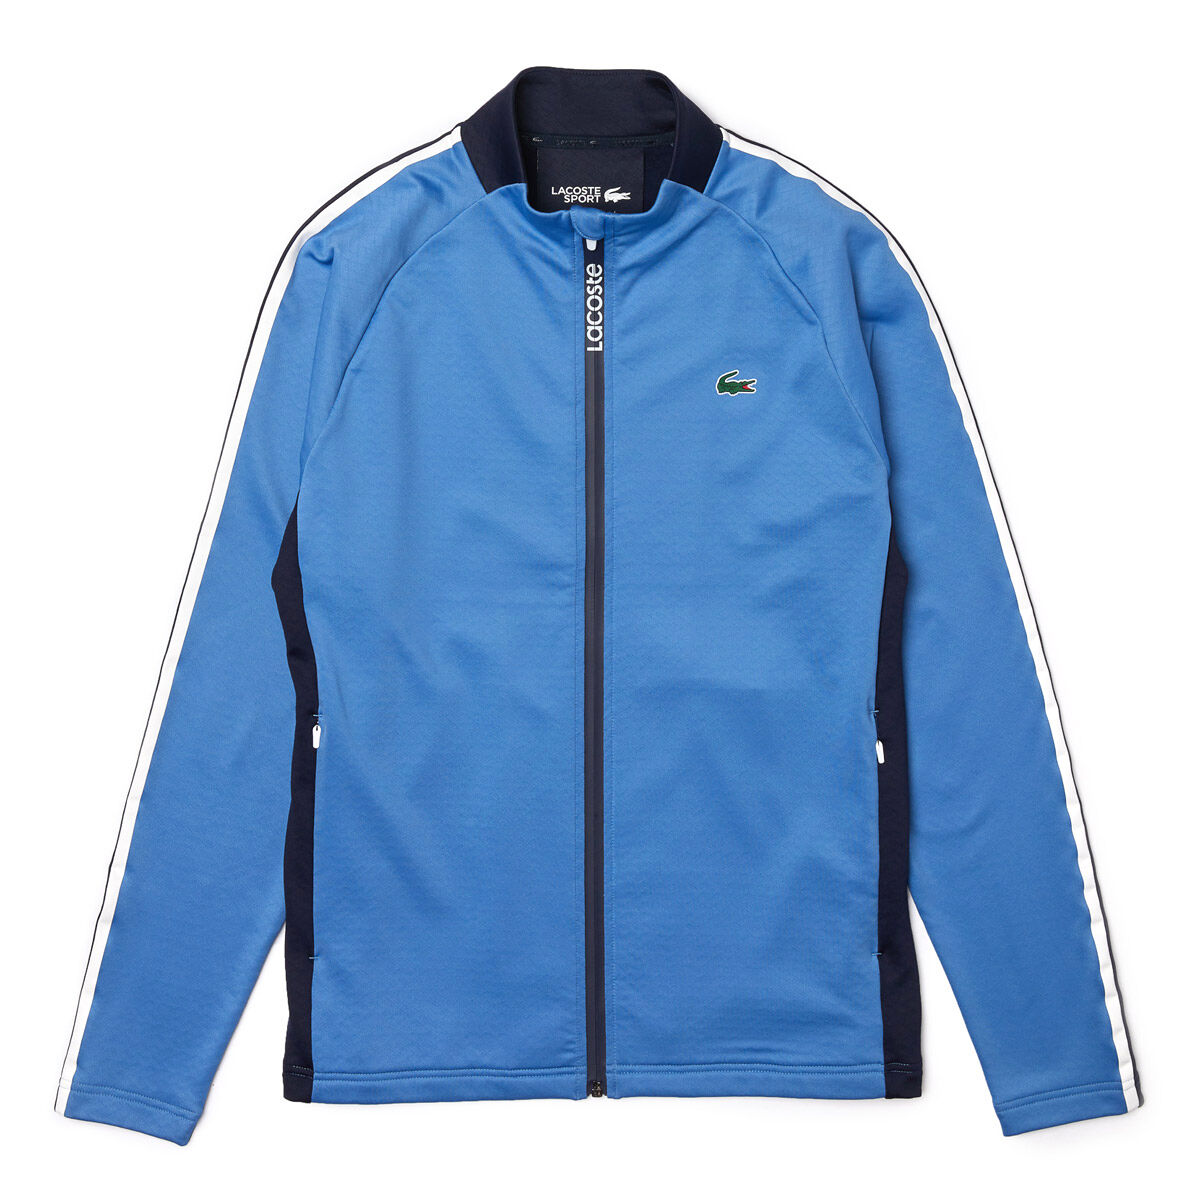 Vêtement intermédiaire ergonomique en polaire Lacoste SPORT, homme, Blue/navy/white, Small  | Online Golf